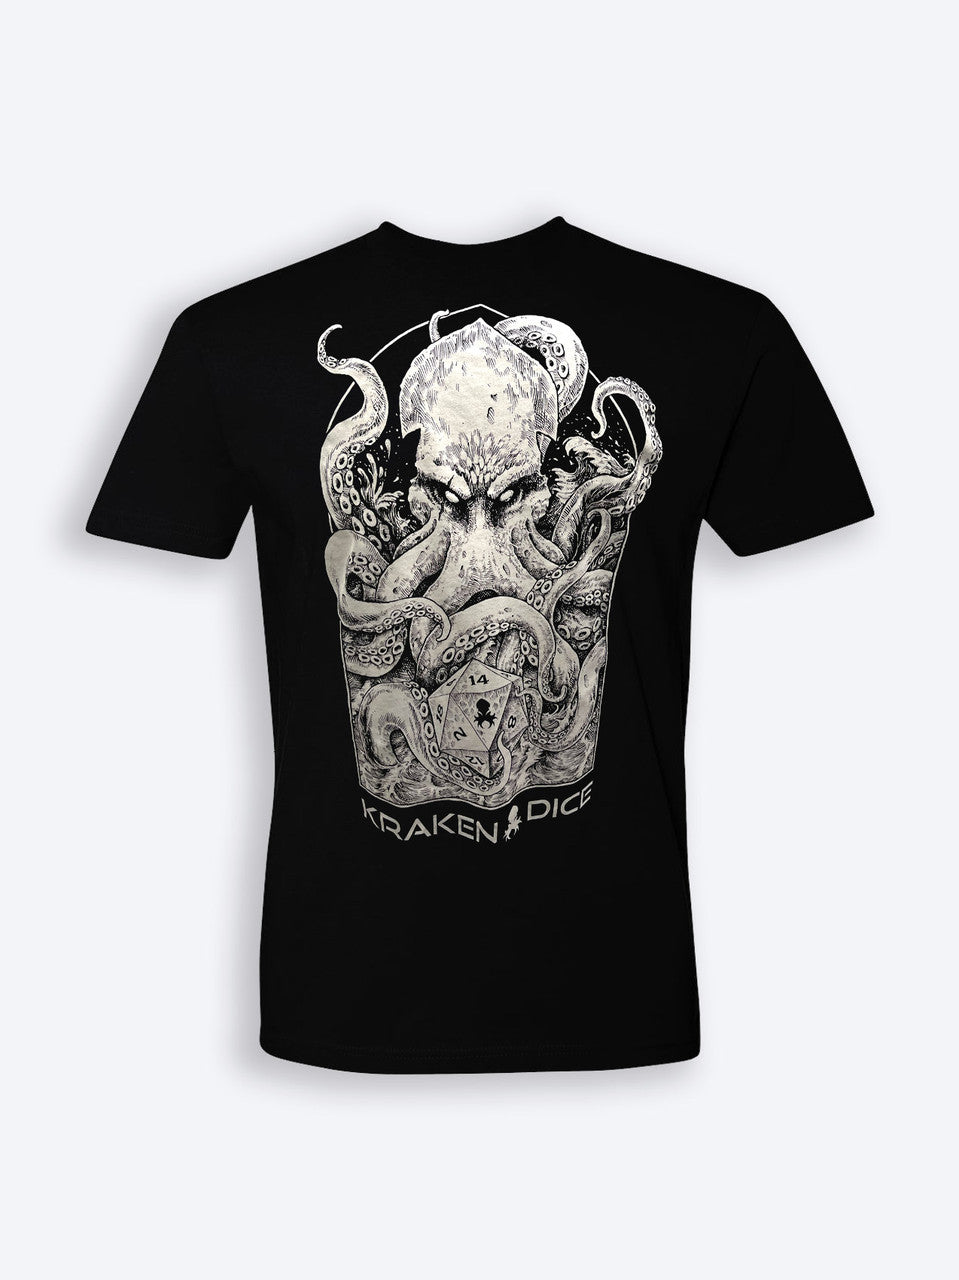 Release the Kraken Unisex T-Shirt